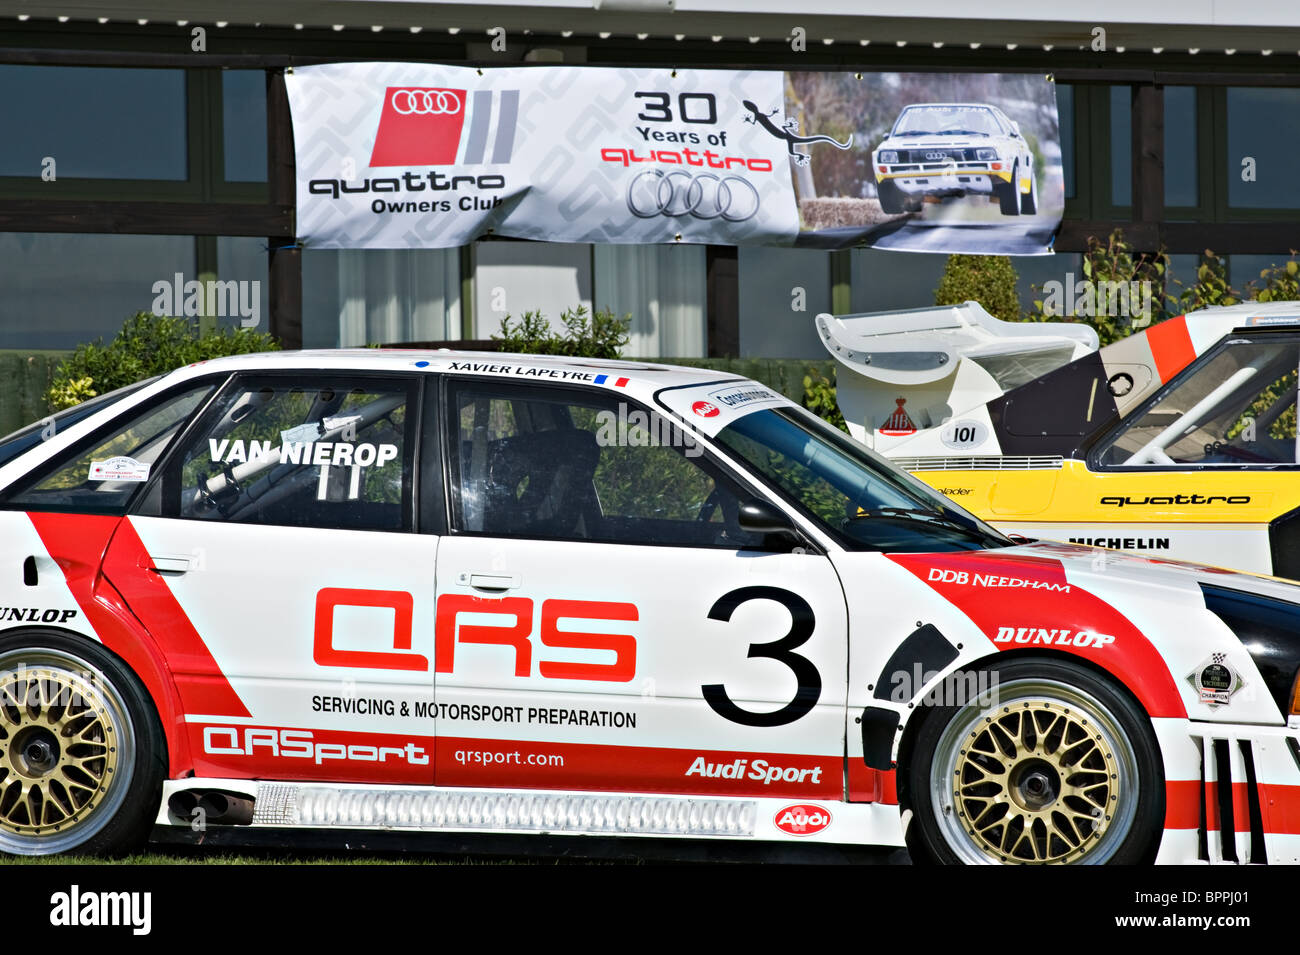 Audi Quattro 80 Voiture de course en tournée à Oulton Park Motor Racing Circuit Cheshire England Royaume-Uni UK Banque D'Images